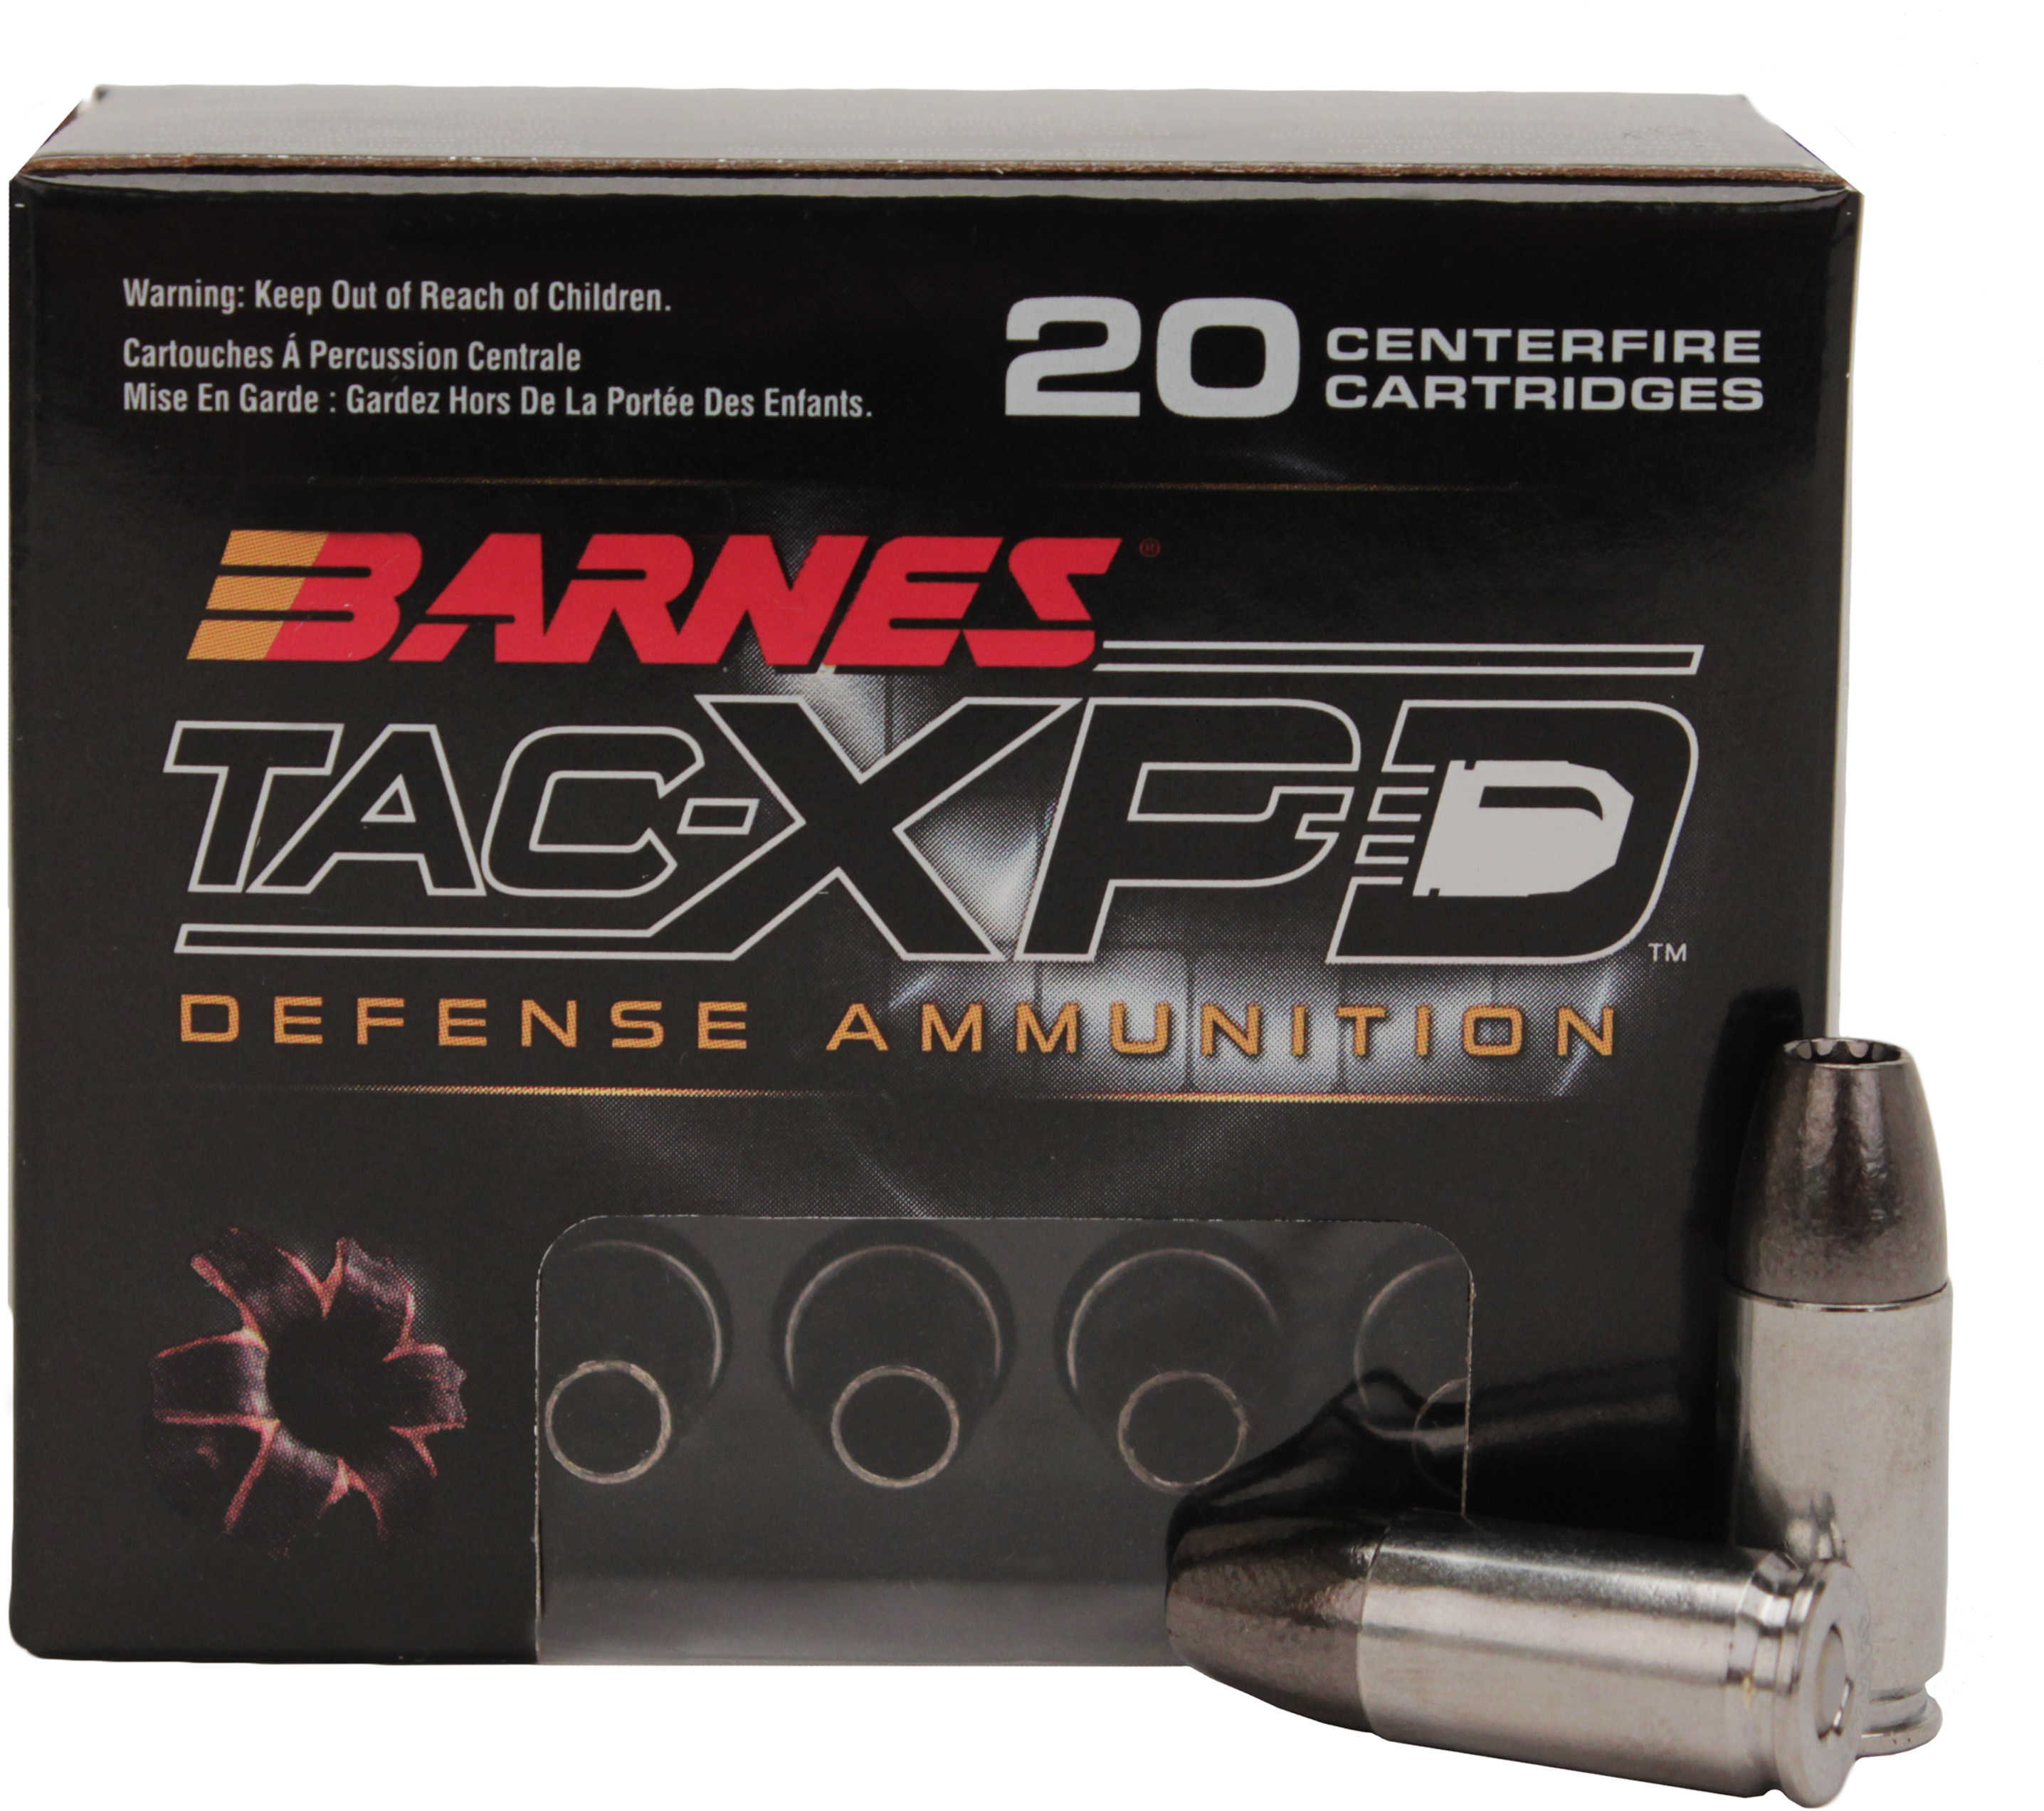 BARNES TAC-XPD PISTOL AMMO 9mm Luger +P Model: 21551